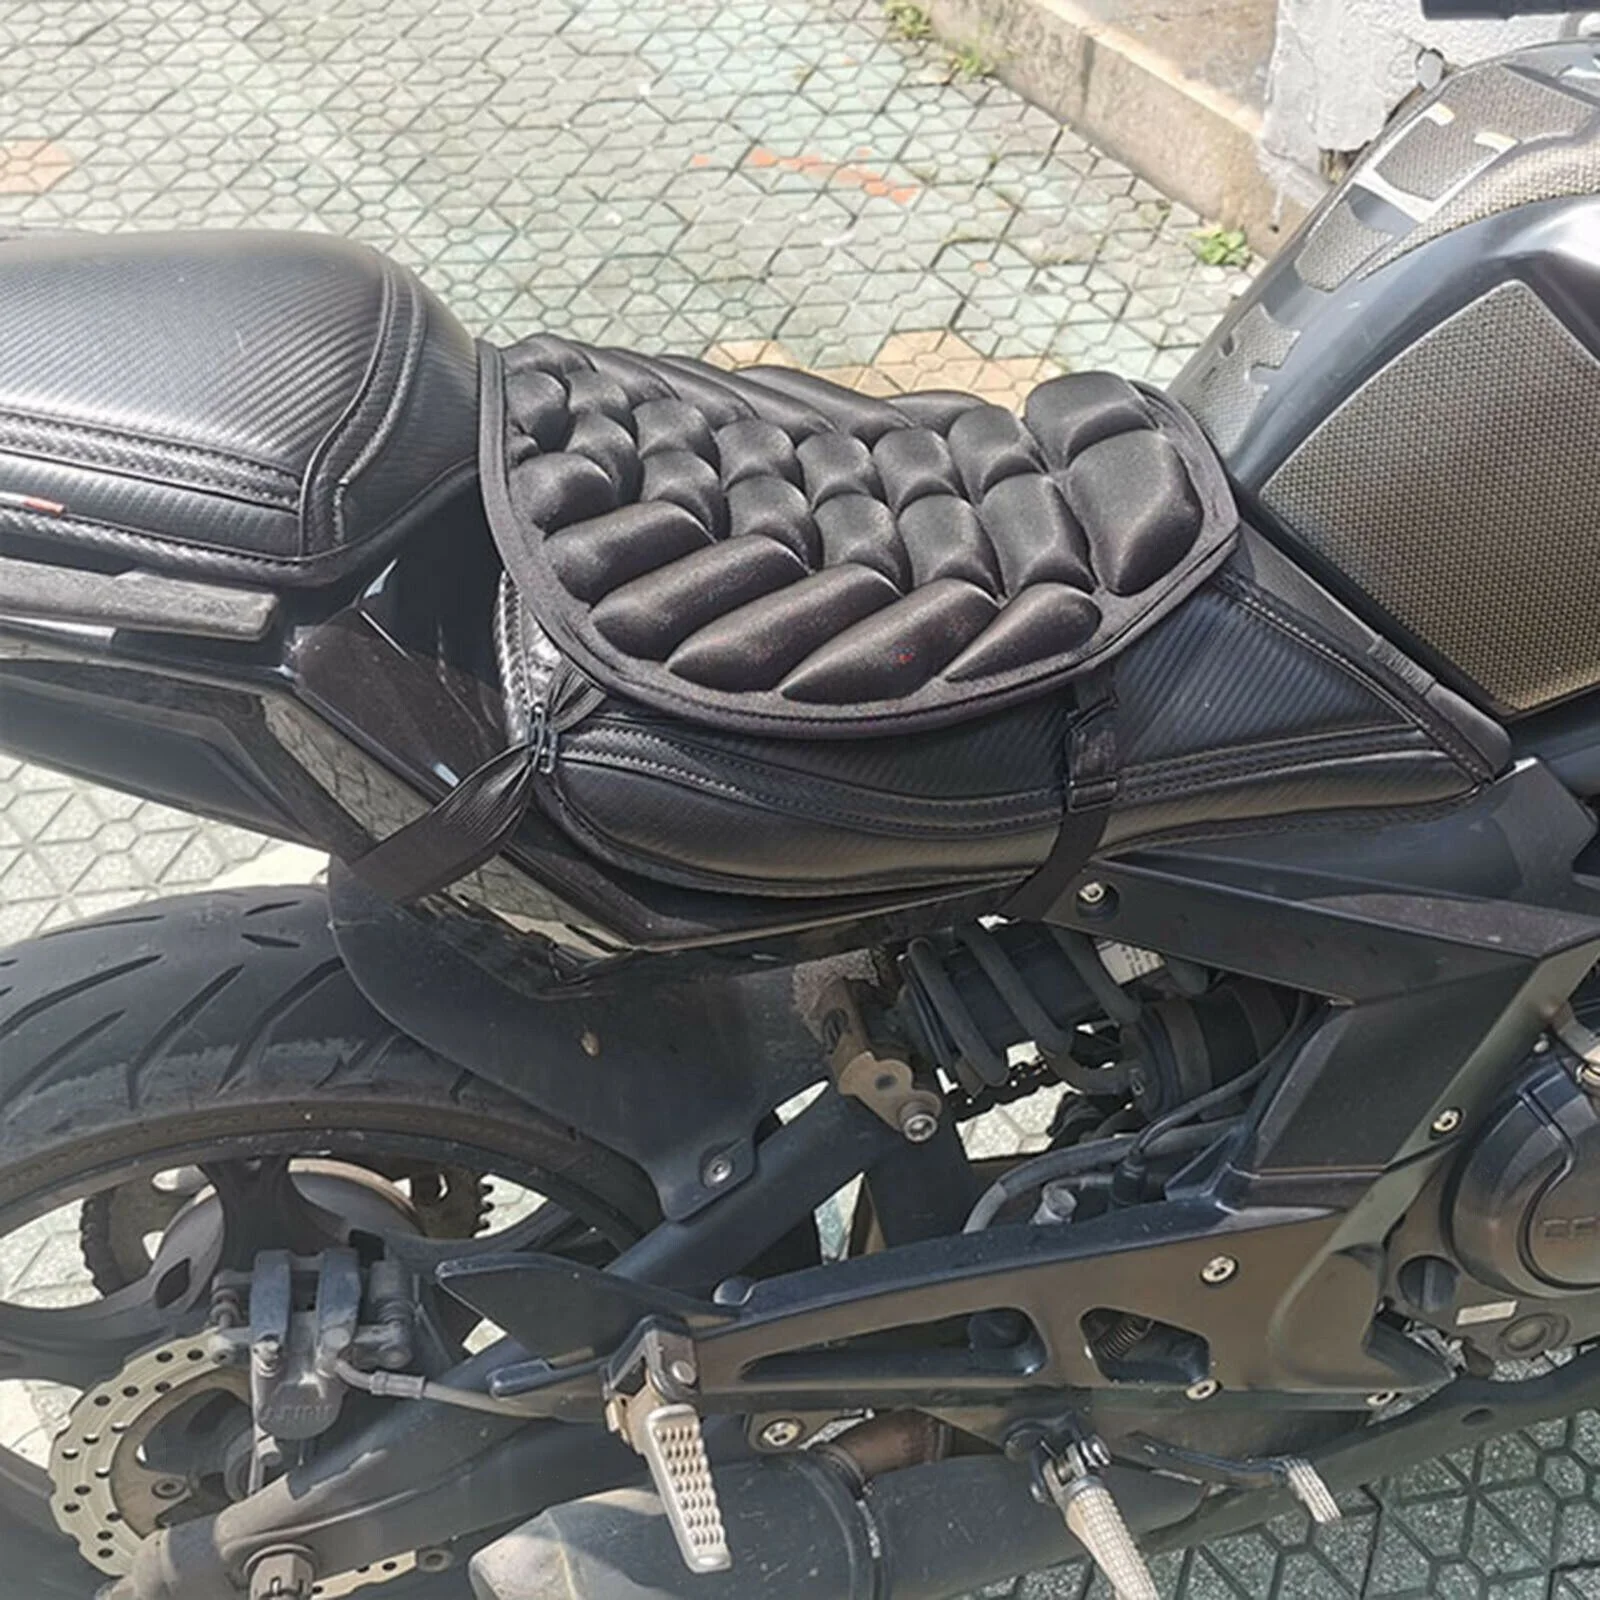 terfu universal motorcycle 3d comfort gel